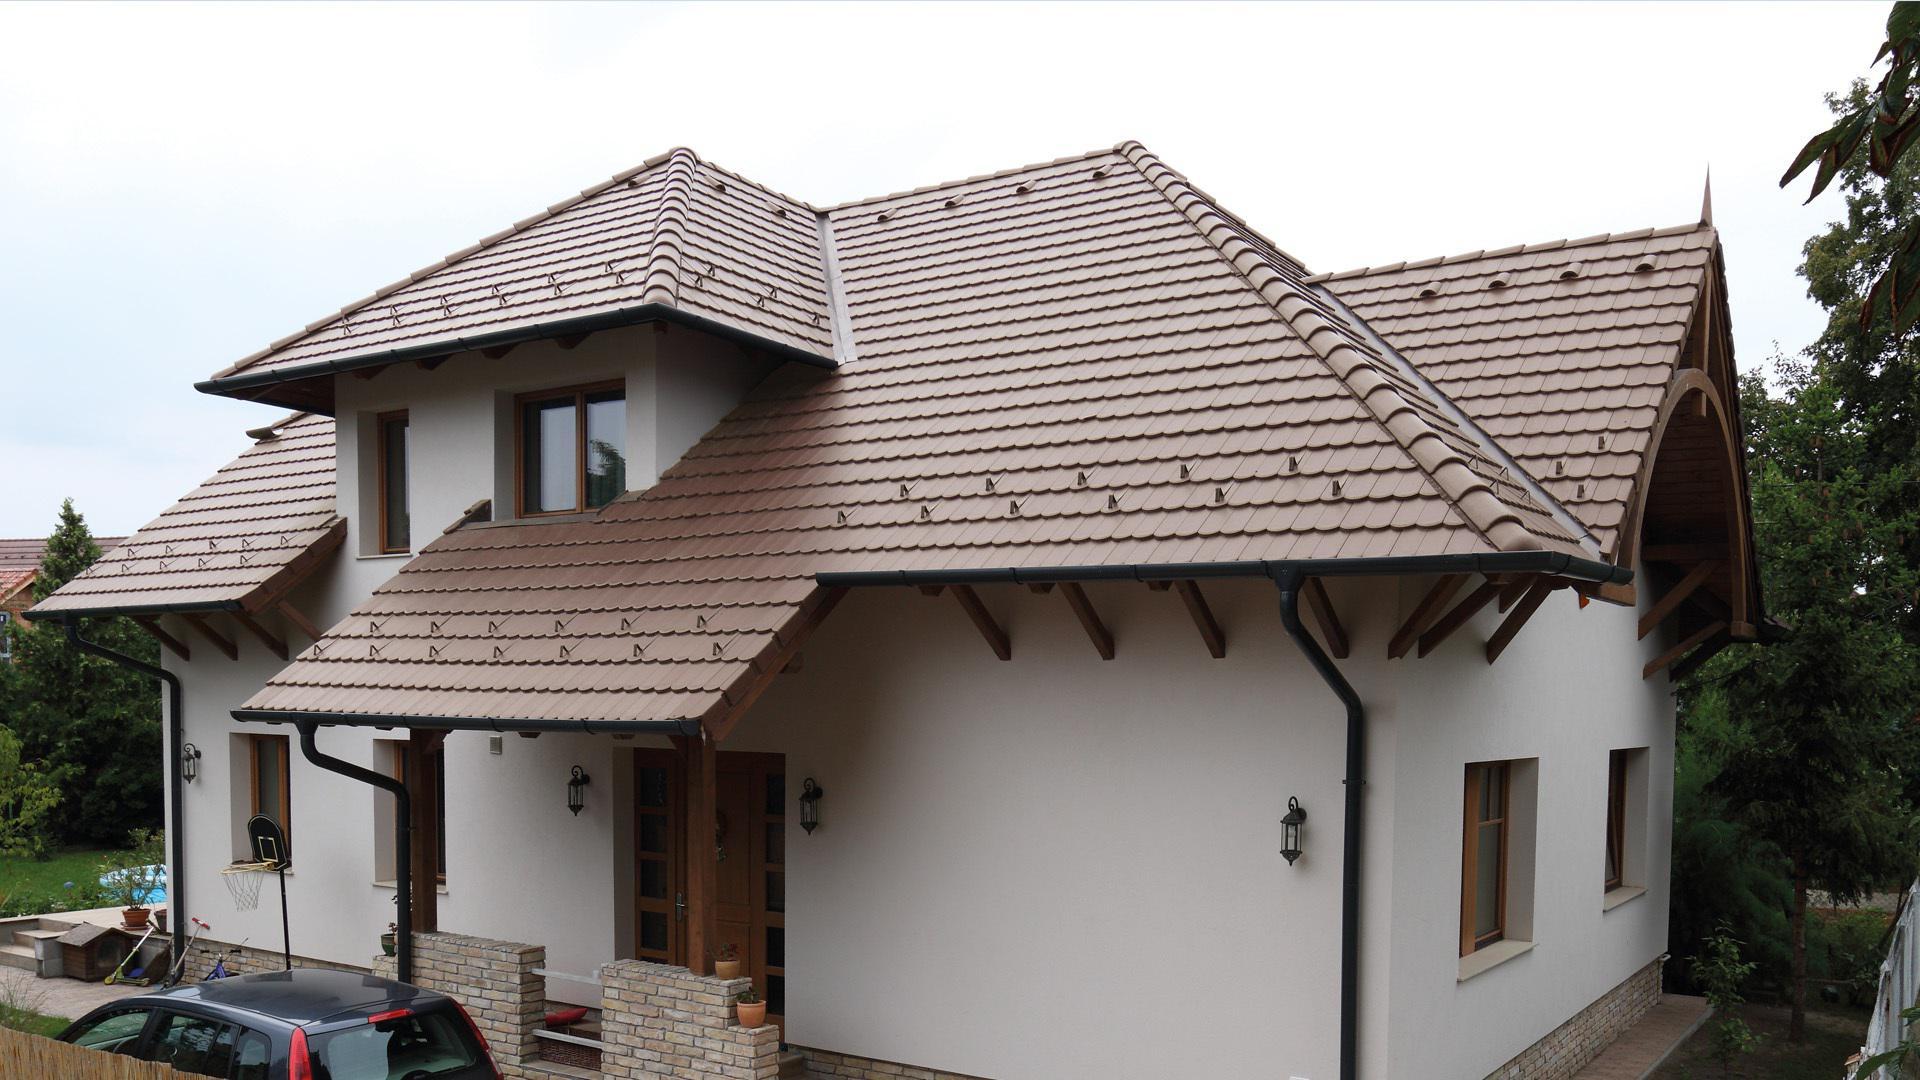 Hagyományos tetőforma klasszikus megjelenésű betoncserepekkel - tető ötlet, klasszikus stílusban